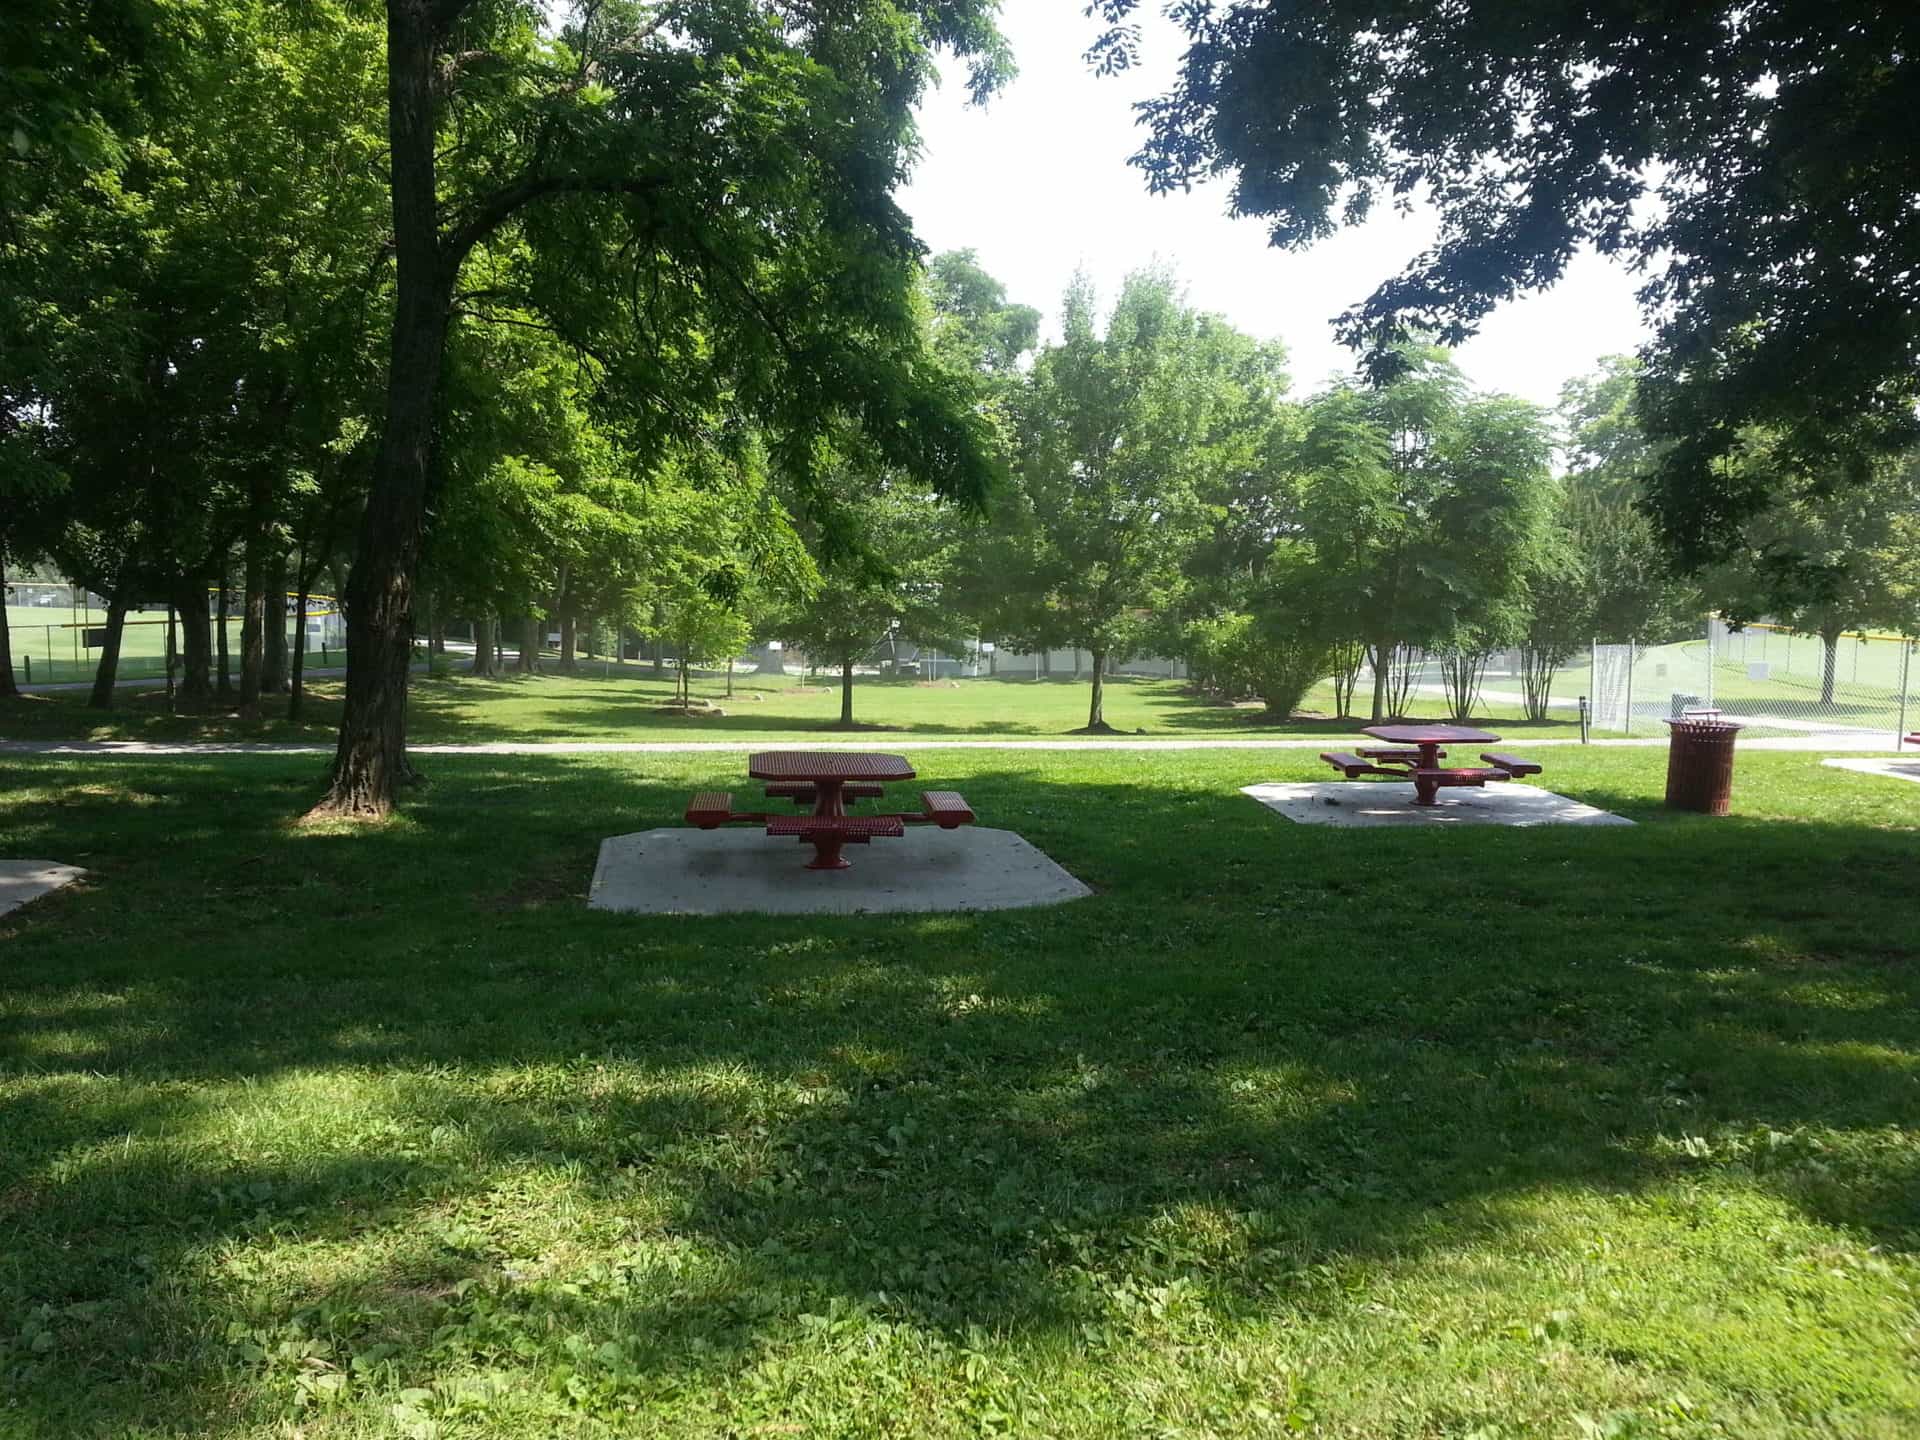 Crockett Park picnic tables